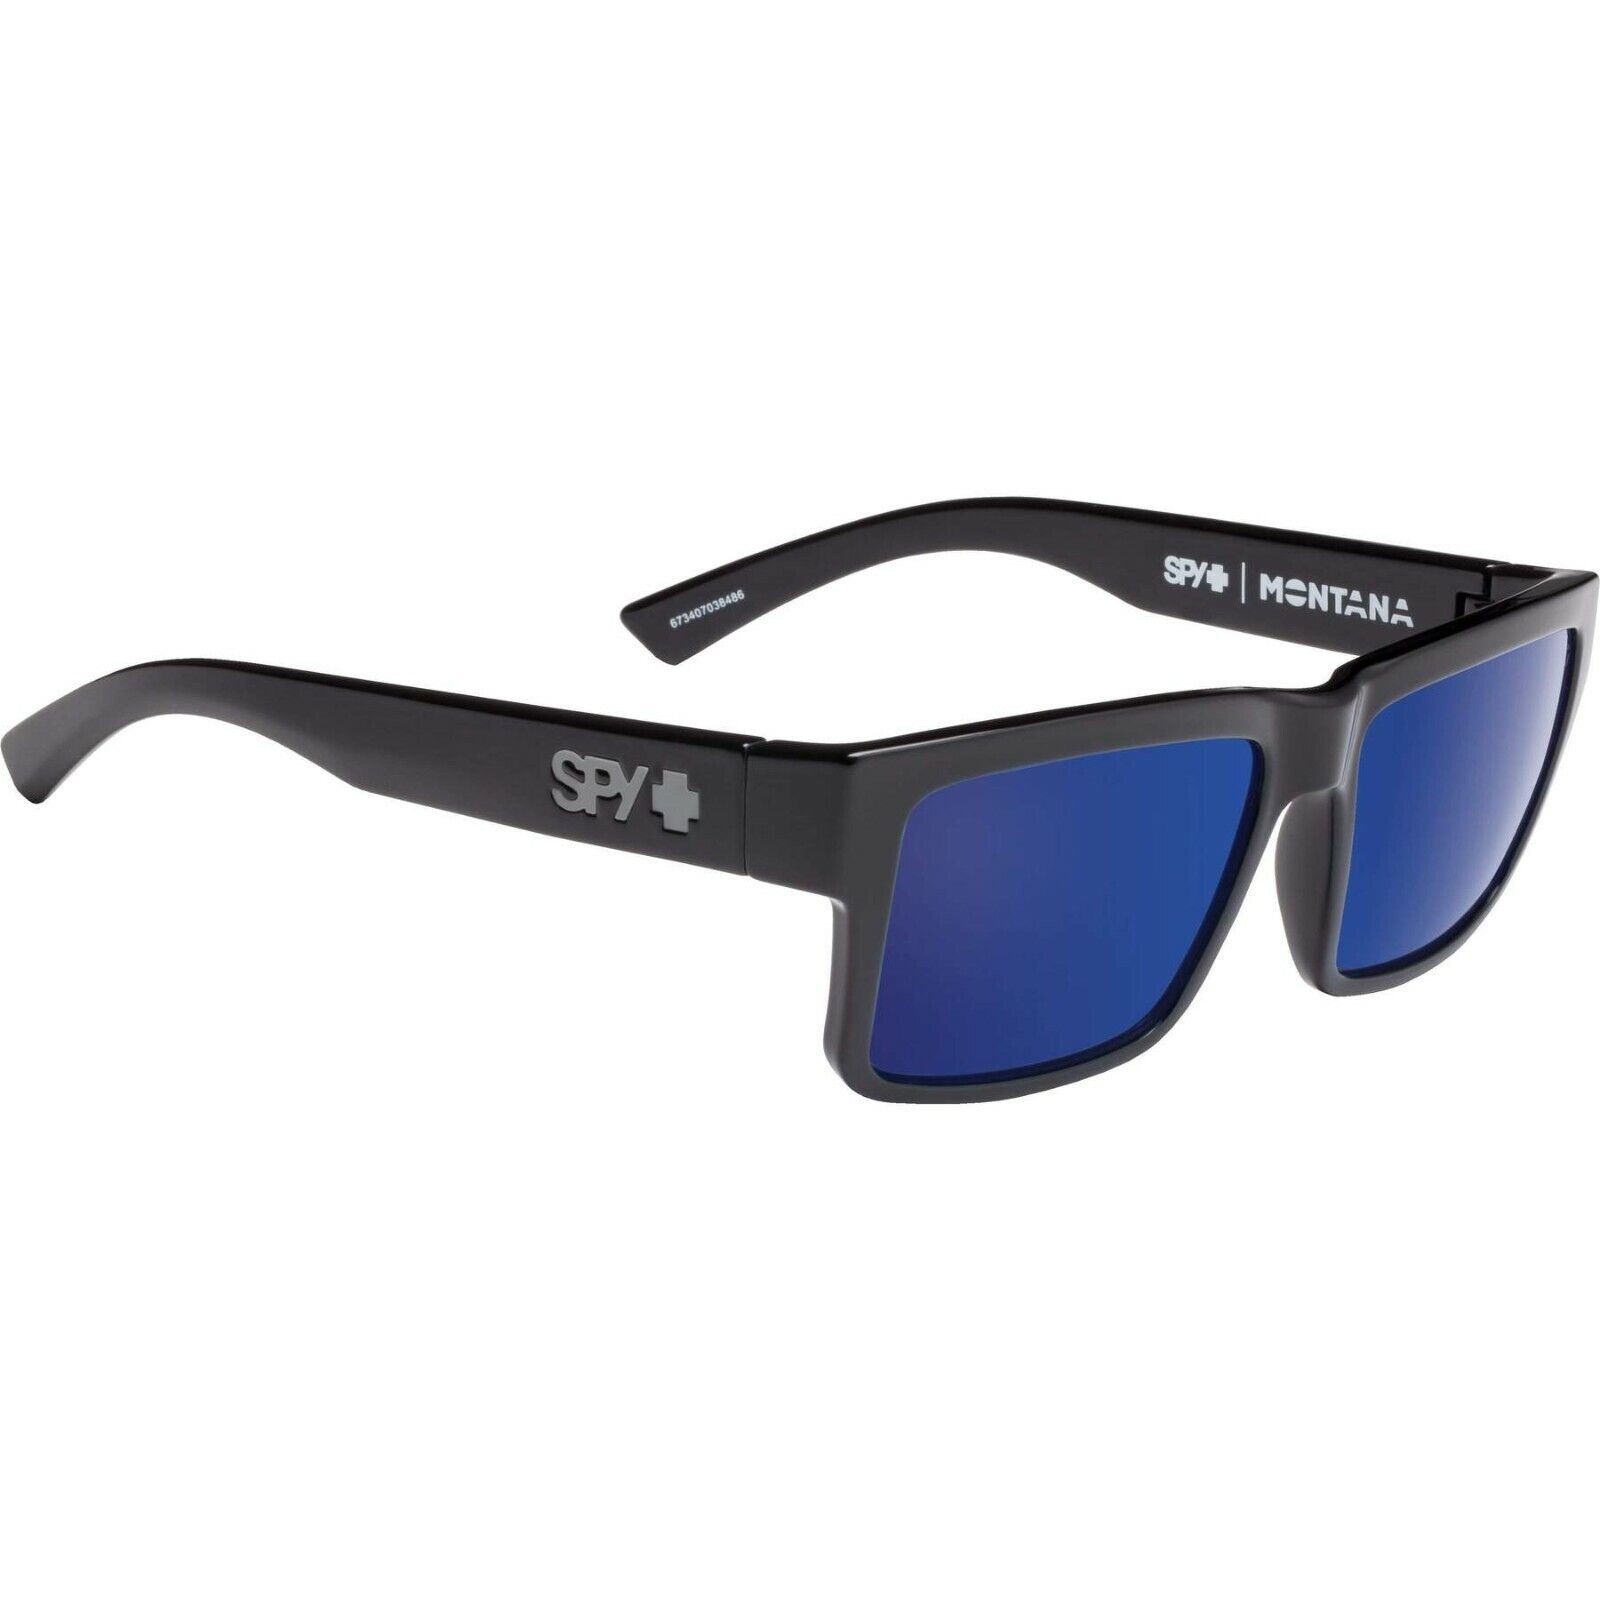 | MONTANA eBay Sunglasses Blue Black SPY Gloss 3DAY Polarized - Gray Green Optic SHIP